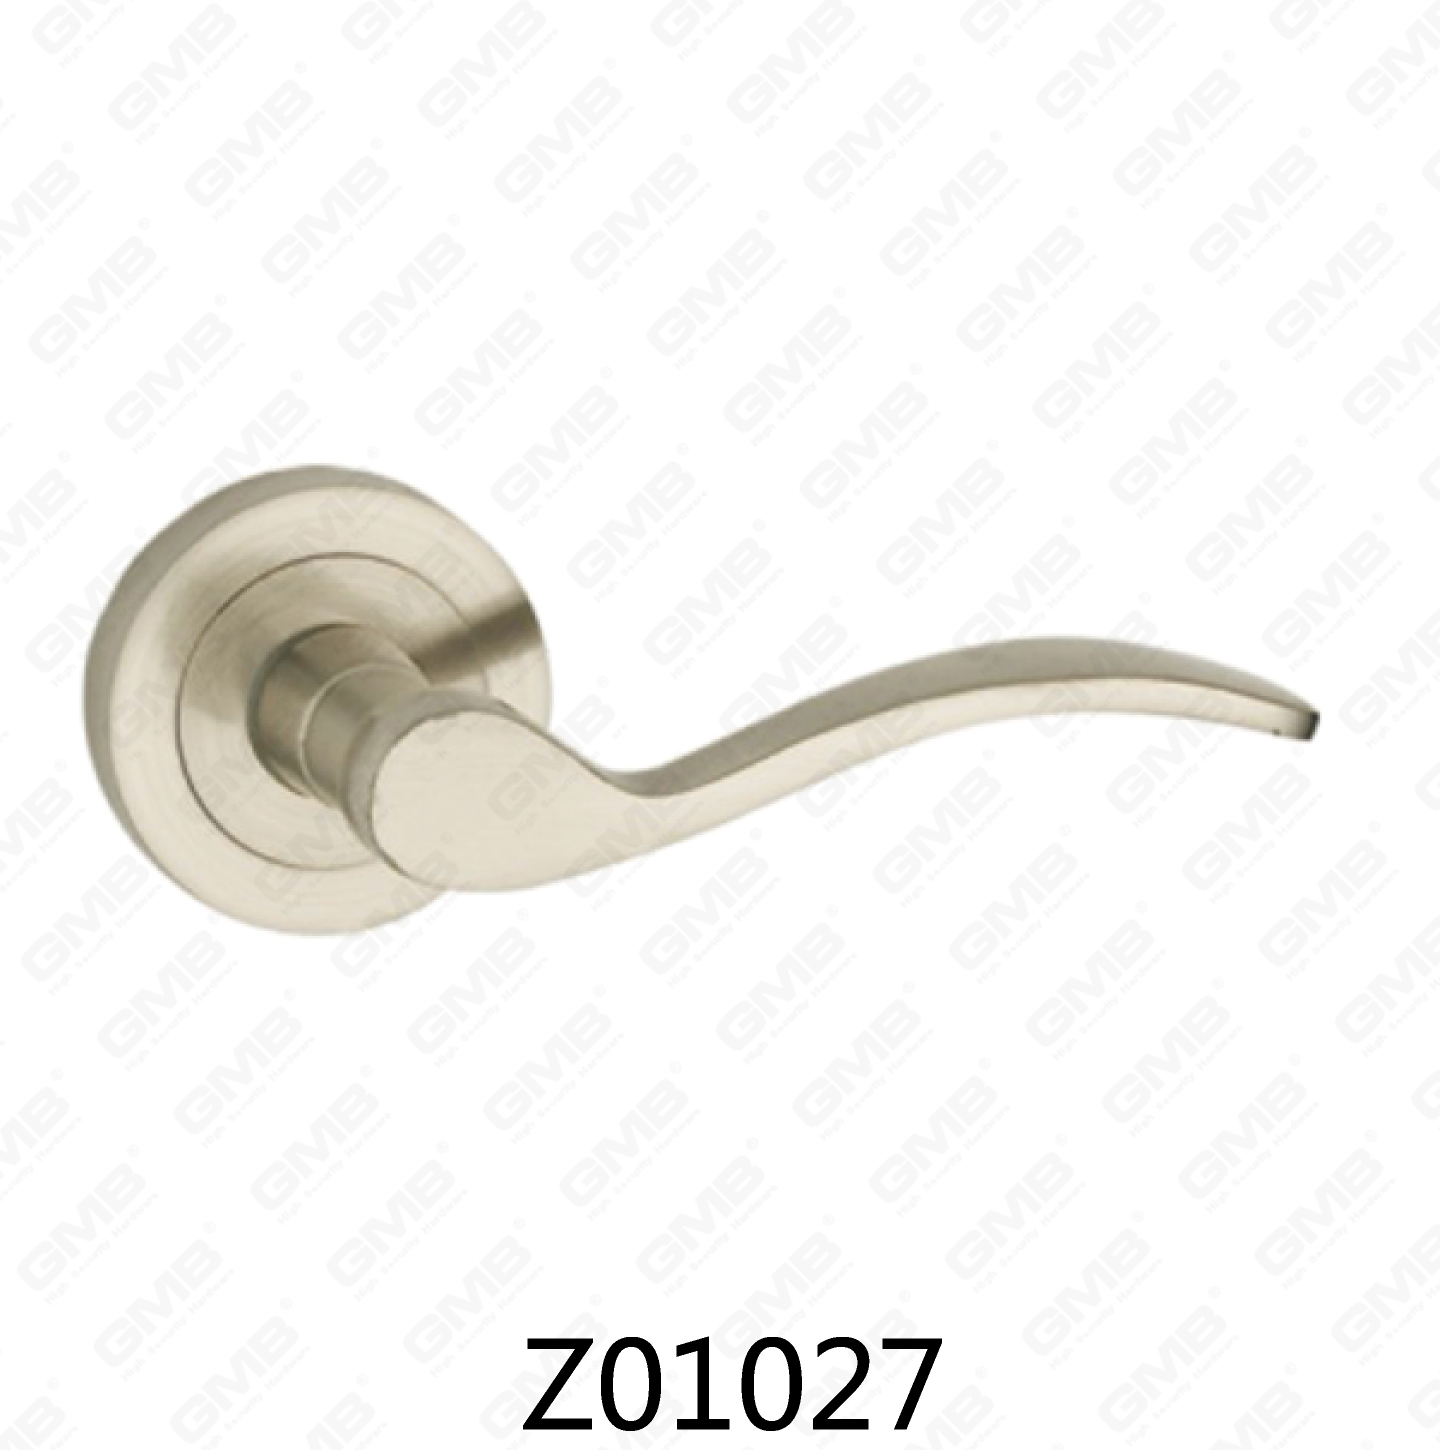 ידית דלת רוזטת אלומיניום מסגסוגת אבץ של Zamak עם רוזטה עגולה (Z01027)